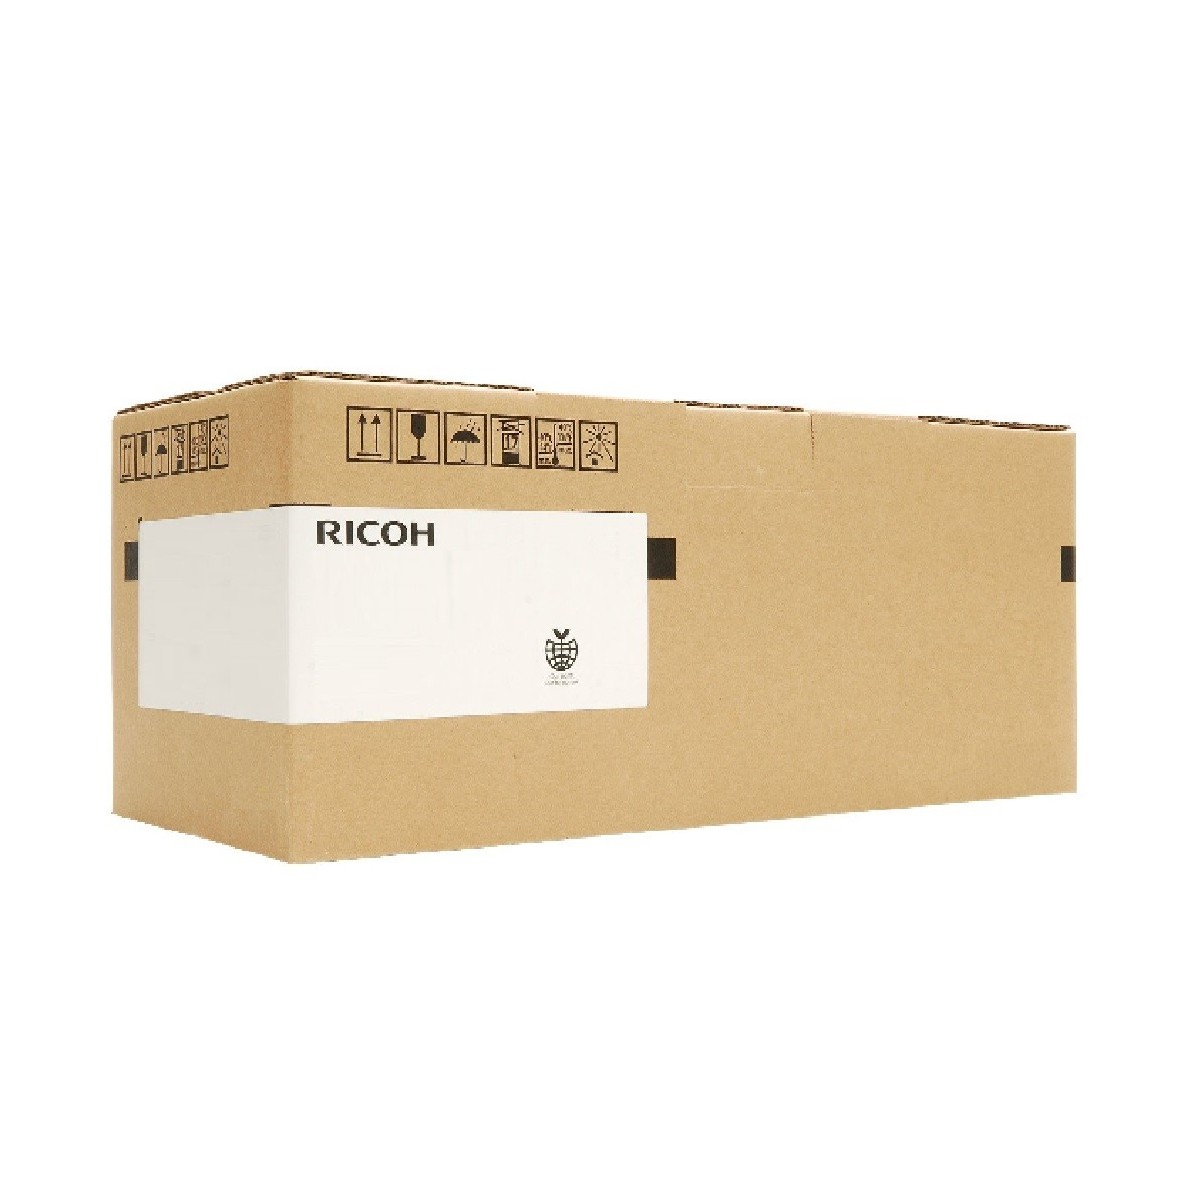 Ricoh B2374063 - Ricoh - Aficio MP C3000C Aficio MP C-2500 Aficio MP C-3000 Aficio MP C2000 - 1 pc(s)